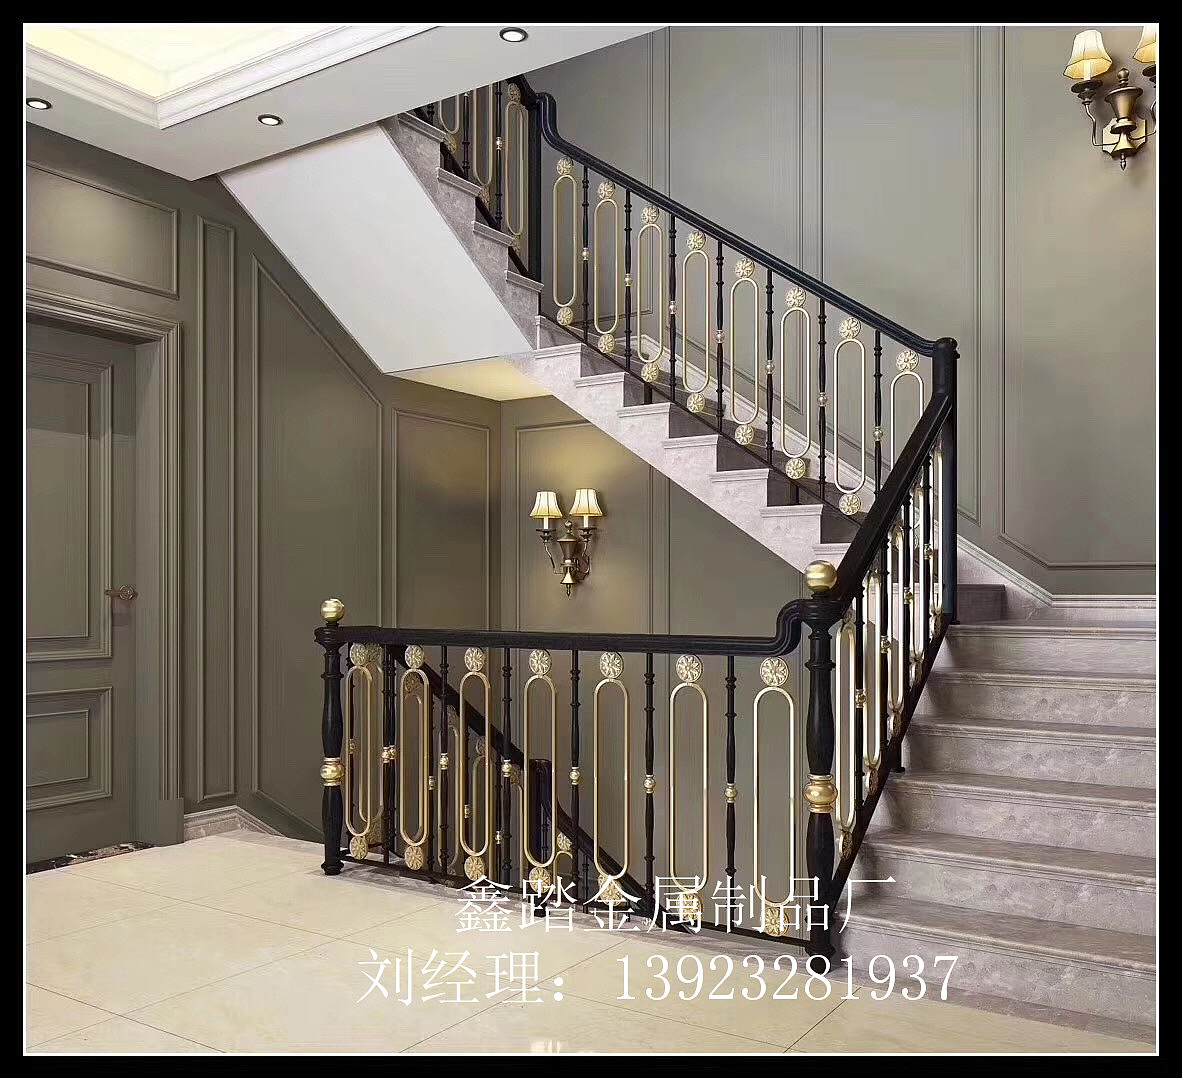 高端别墅室内铝艺雕花镀金楼梯扶手经典款式案例效果图